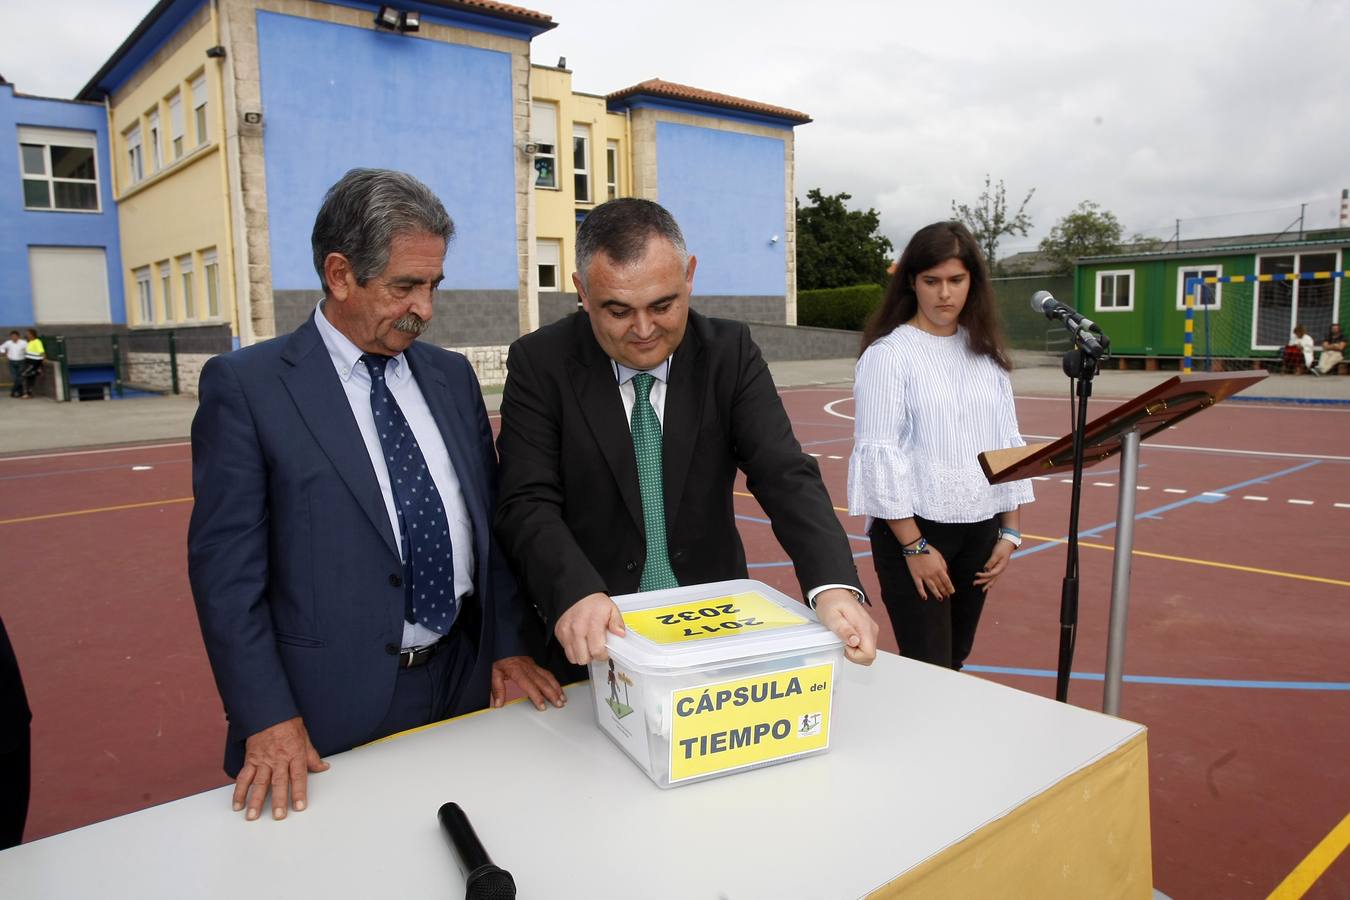 El colegio Salvador de Barreda celebró su 35 aniversario enterrando una cápsula del tiempo en el centro.